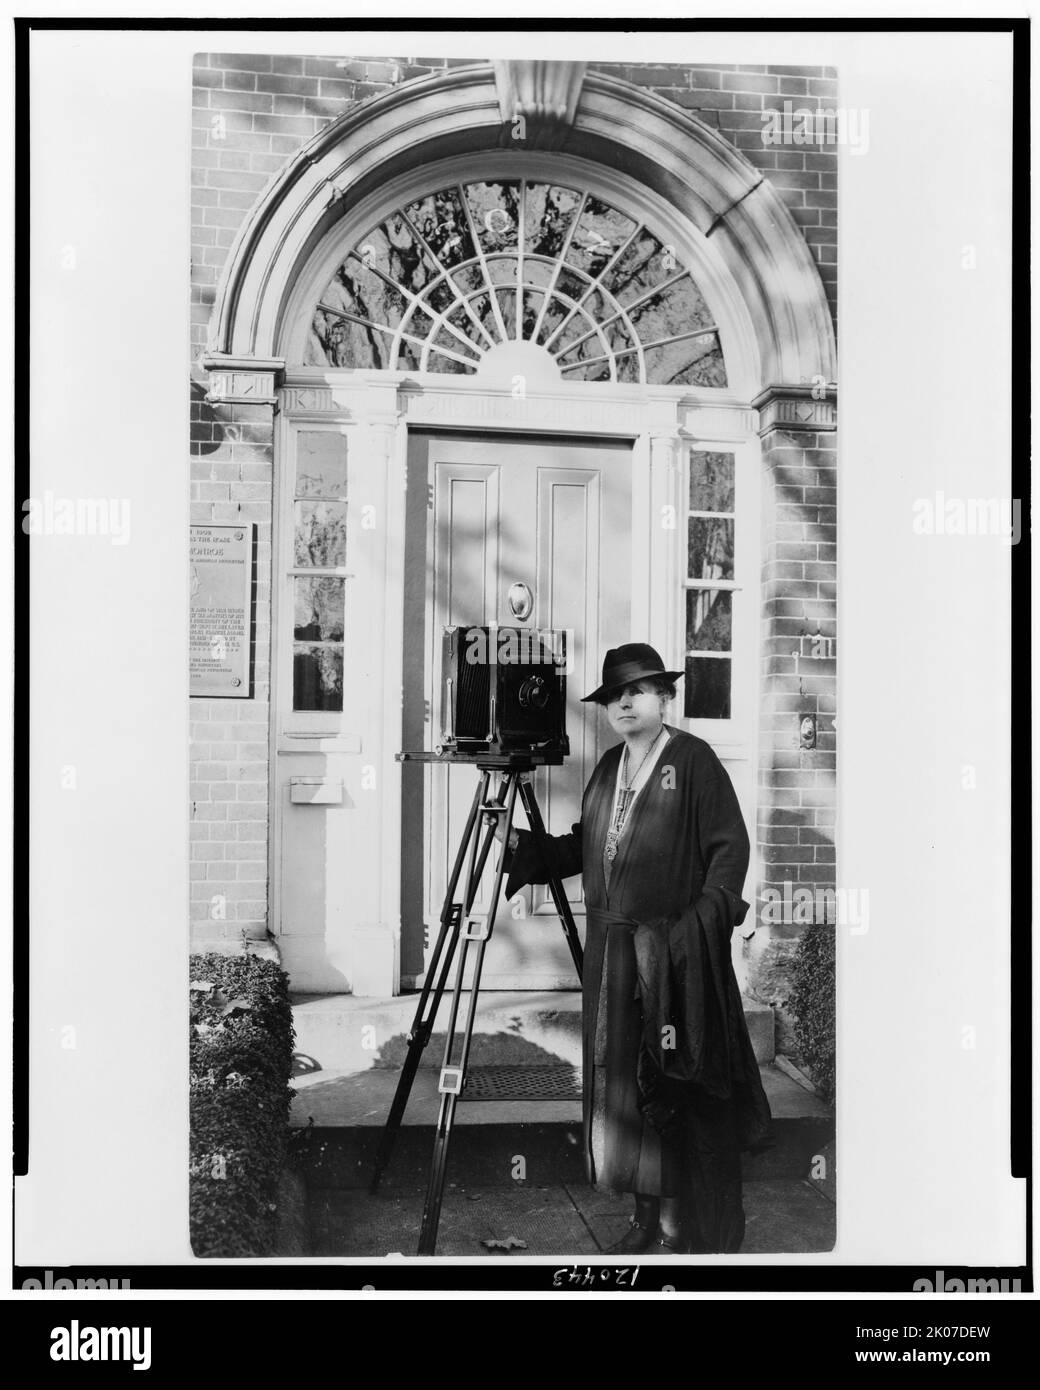 Frances Benjamin Johnston, ritratto completo, in piedi davanti alla porta, con fotocamera, rivolto leggermente a sinistra, c1935. Foto Stock